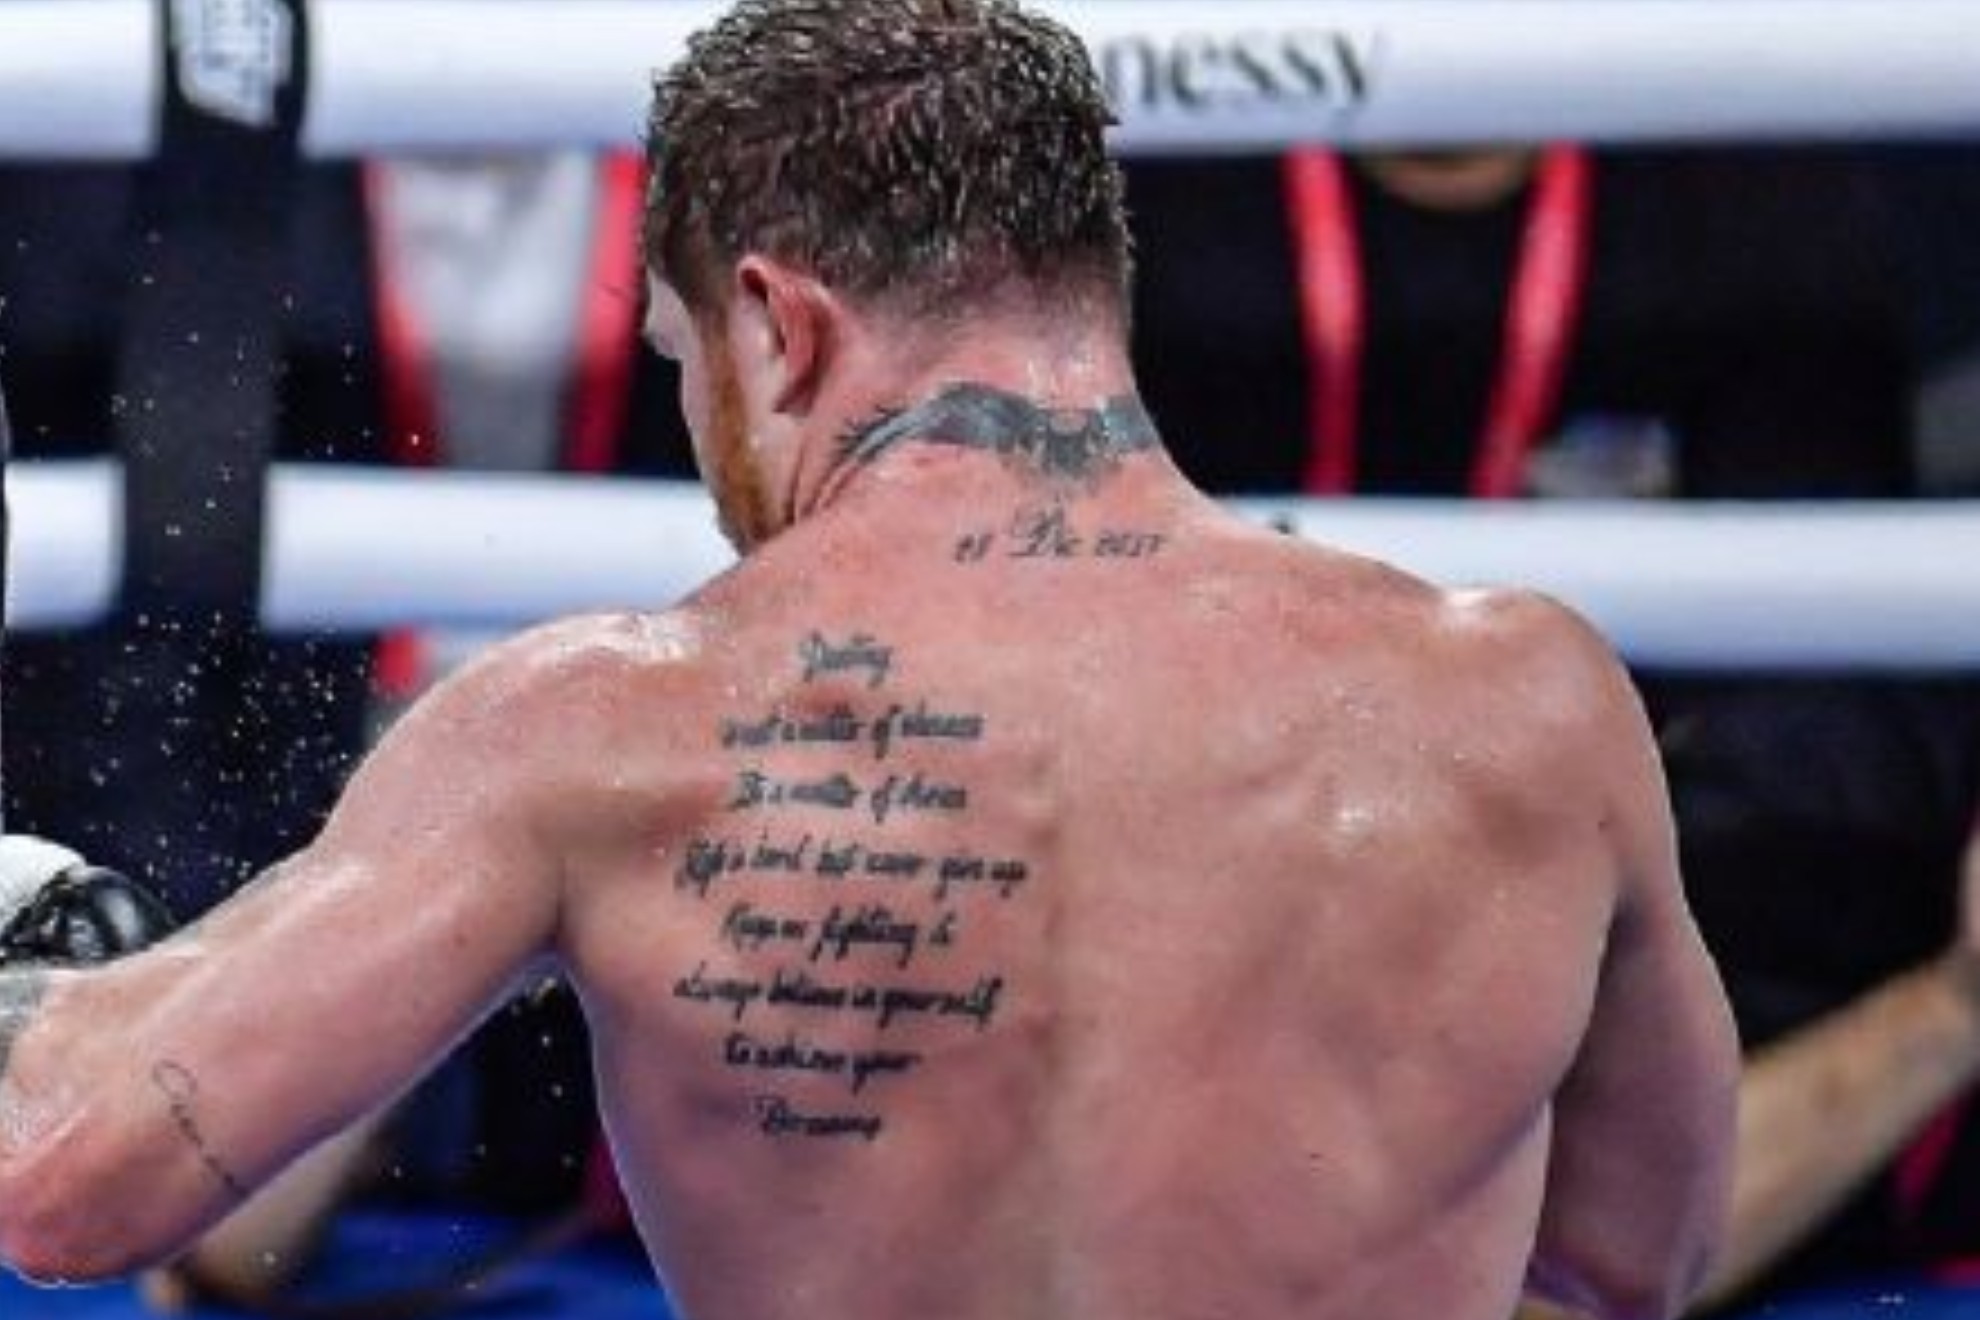 Qu significa el tatuaje del Canelo lvarez en la espalda?